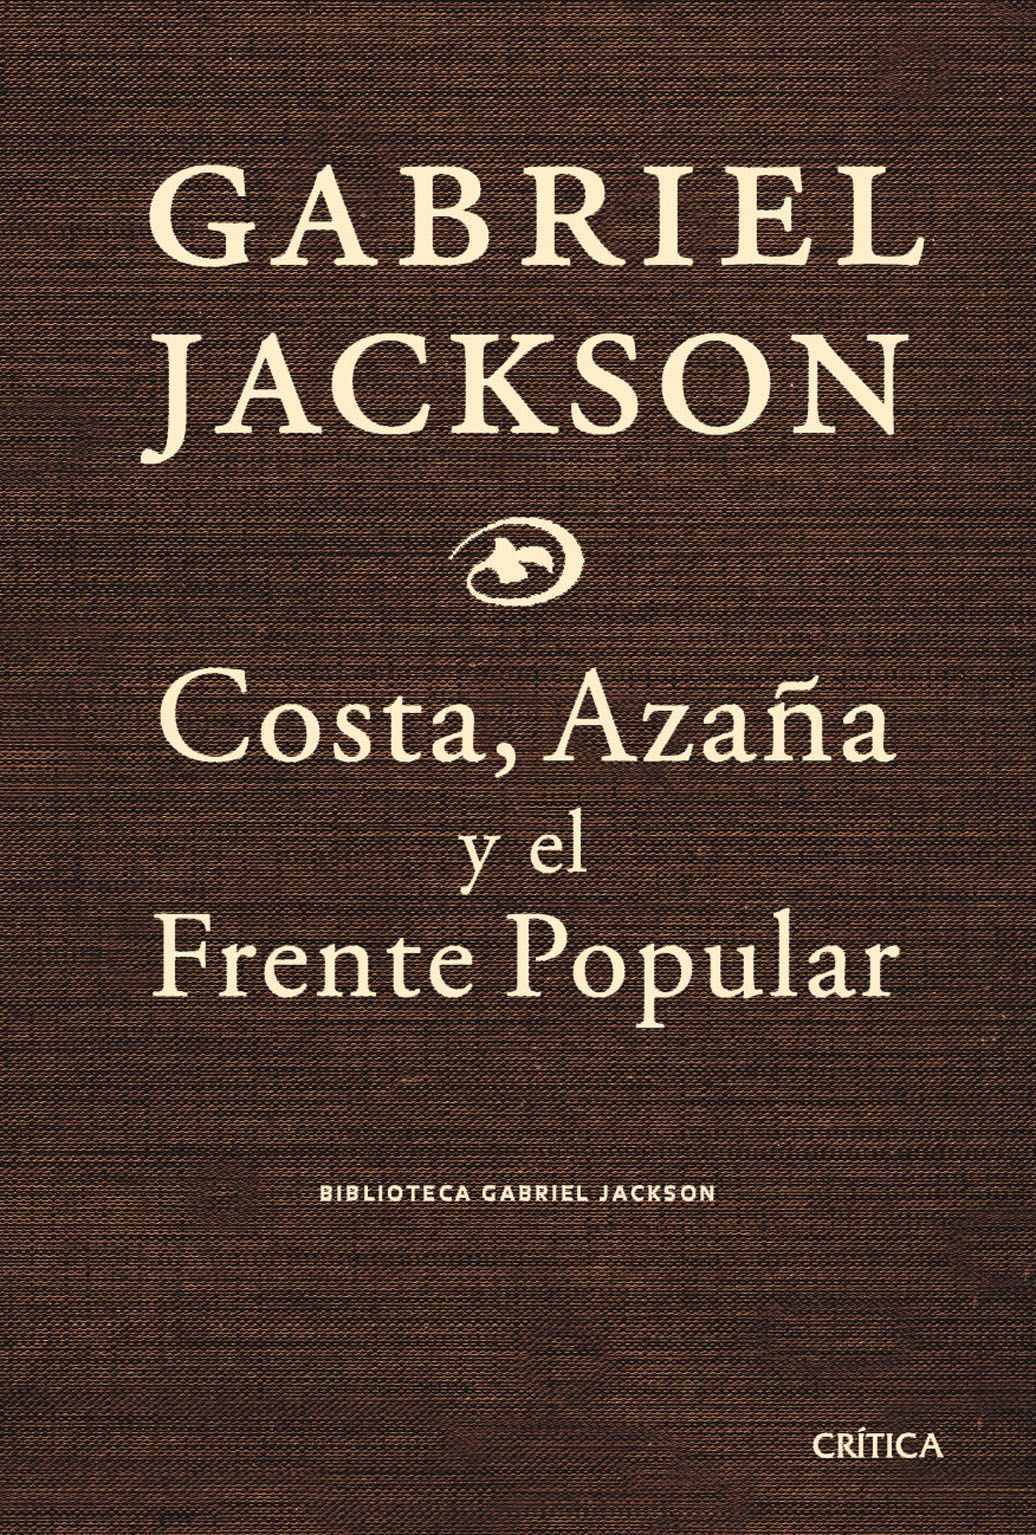 Costa, Azaña y el Frente Popular y otros ensayos